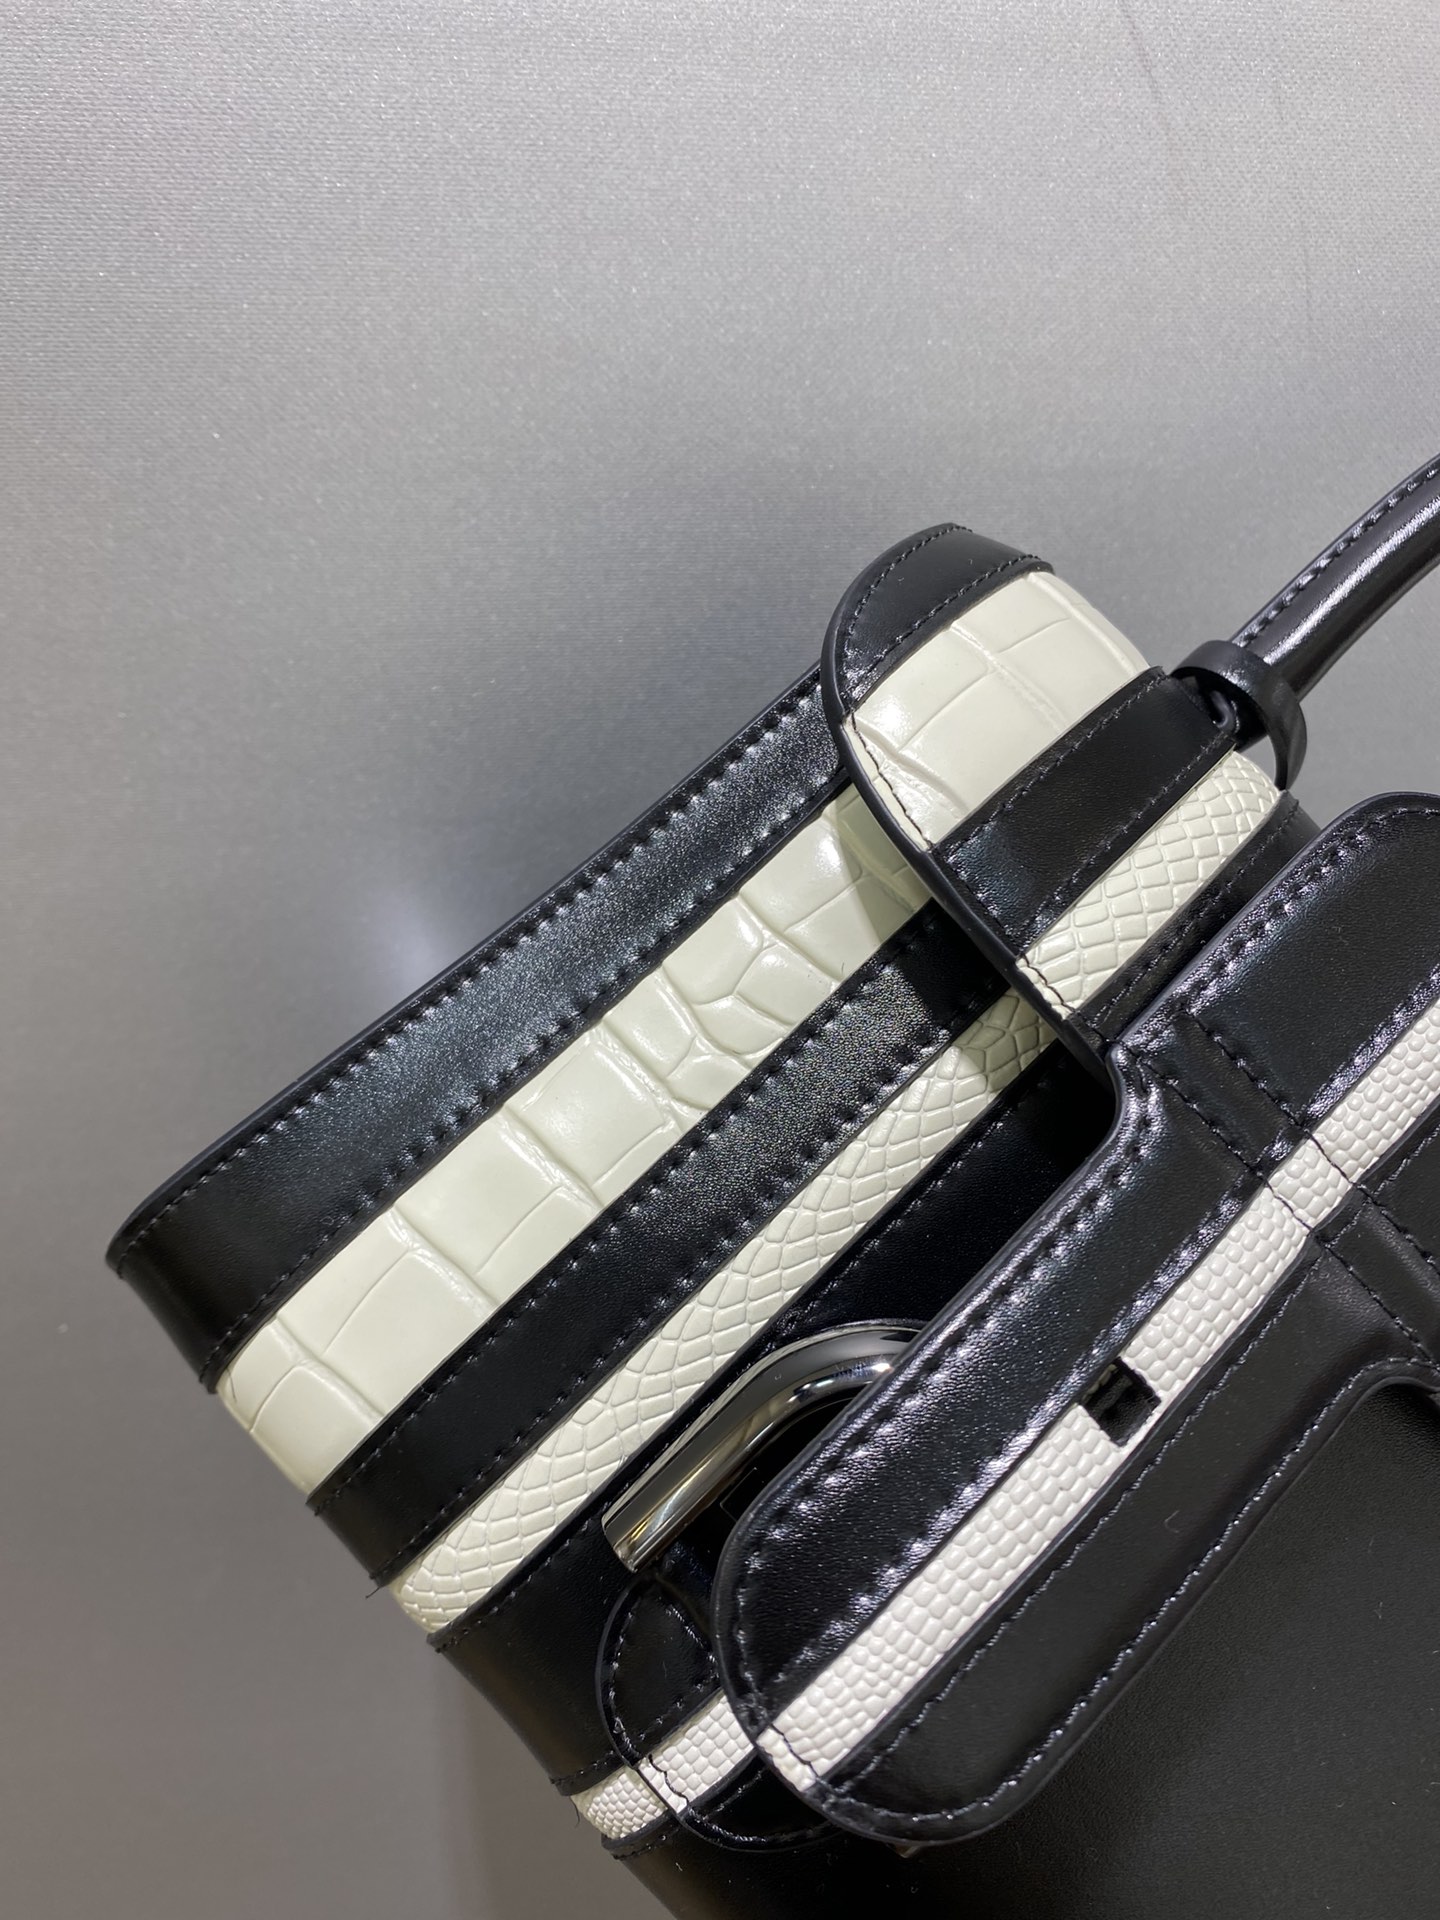 DelvauxBL系列黑色/白色box皮白色蜥蜴纹蟒蛇纹与鳄鱼纹相间跨越两个世纪的传奇奢侈皮具品牌超柔软